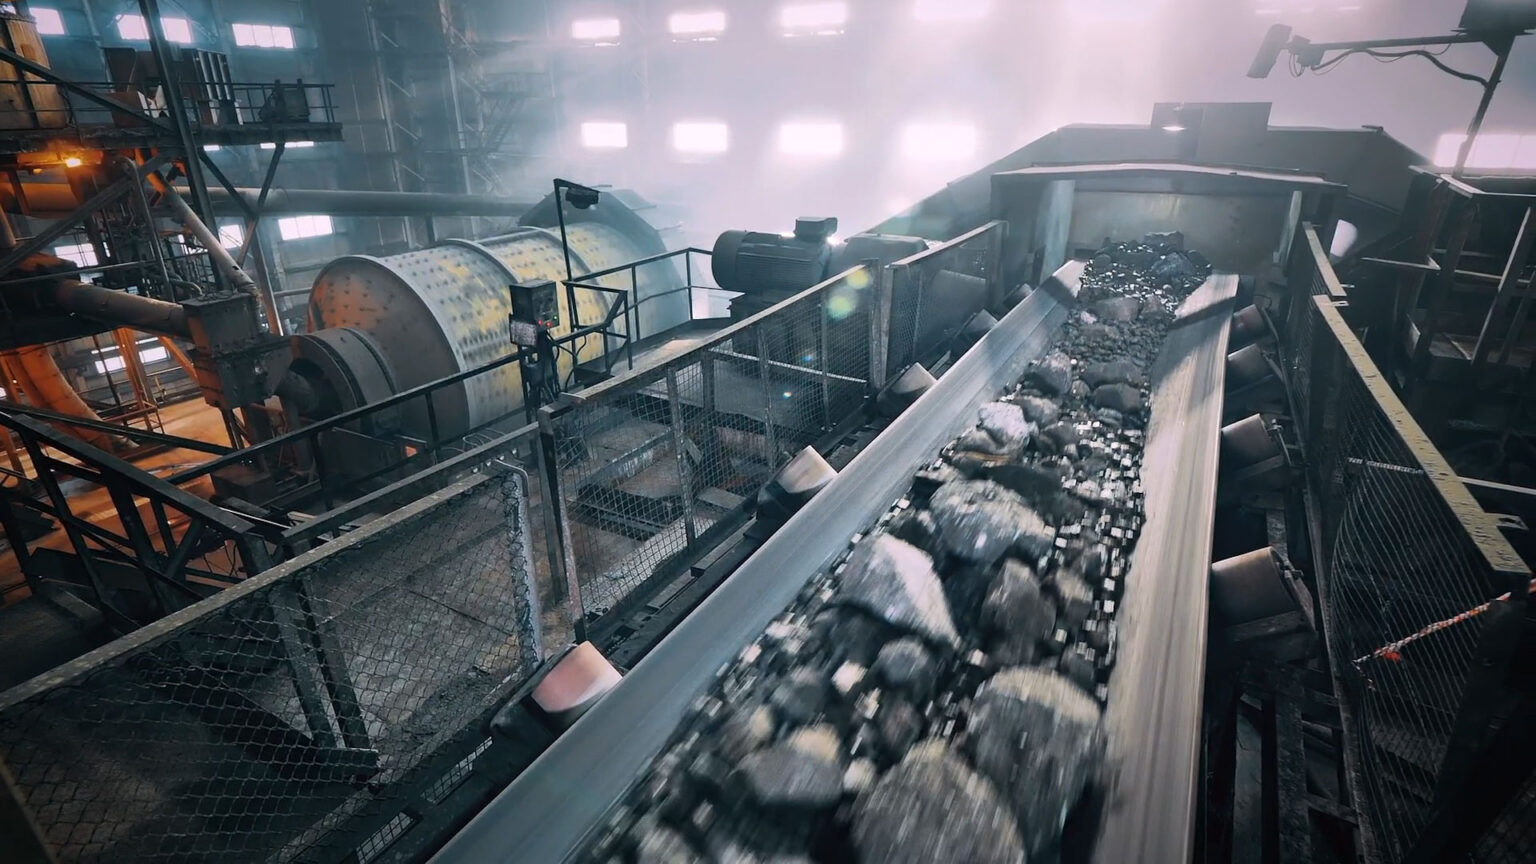 Critical metals, la nueva compañía que explotará las minas de litio europeas y cotizará en el Nasdaq